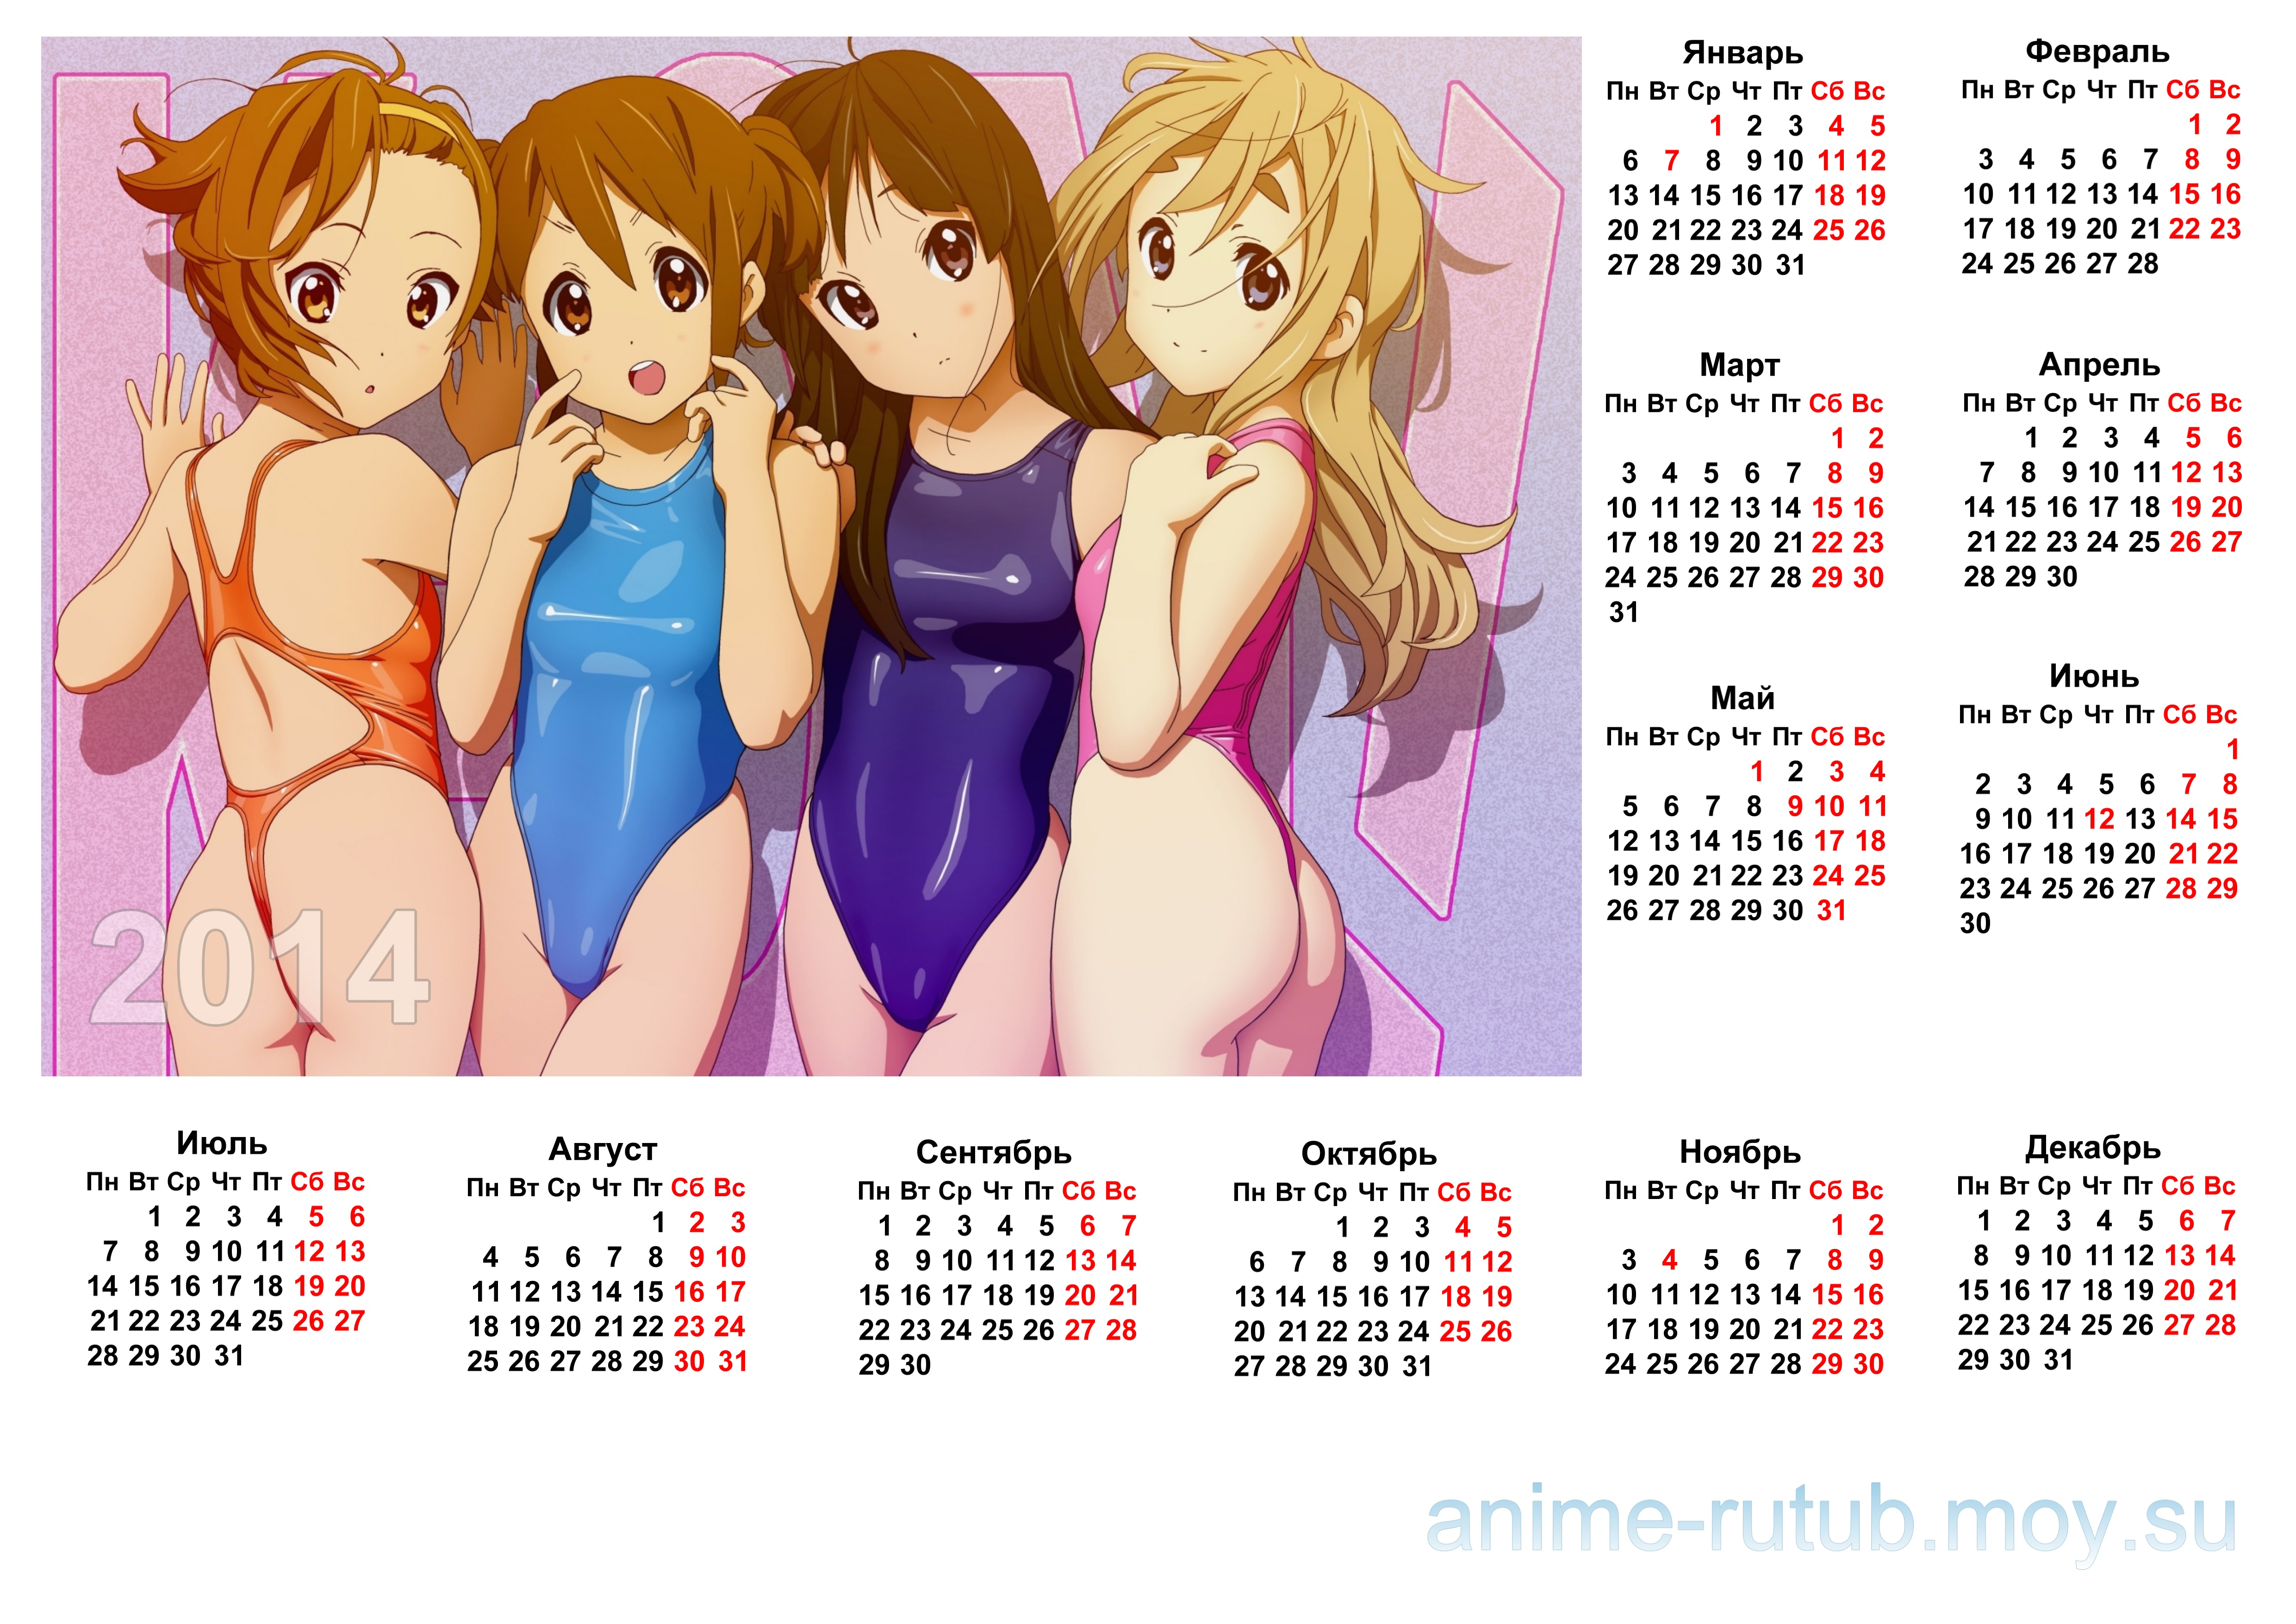 аниме календарь на 2014 год с девушками К-он